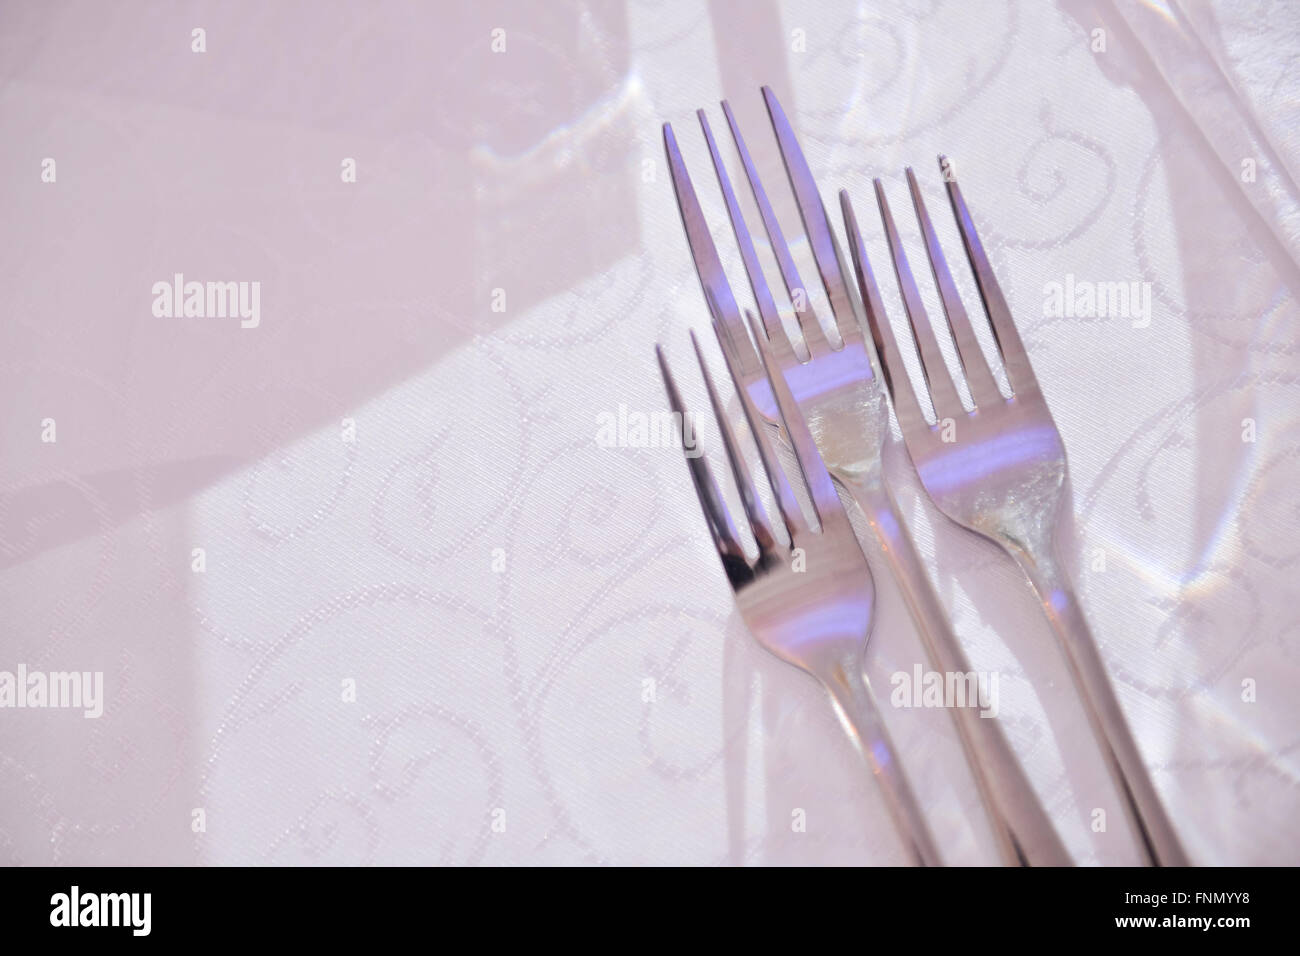 Horquillas colocados sobre una mesa en el restaurante Foto de stock